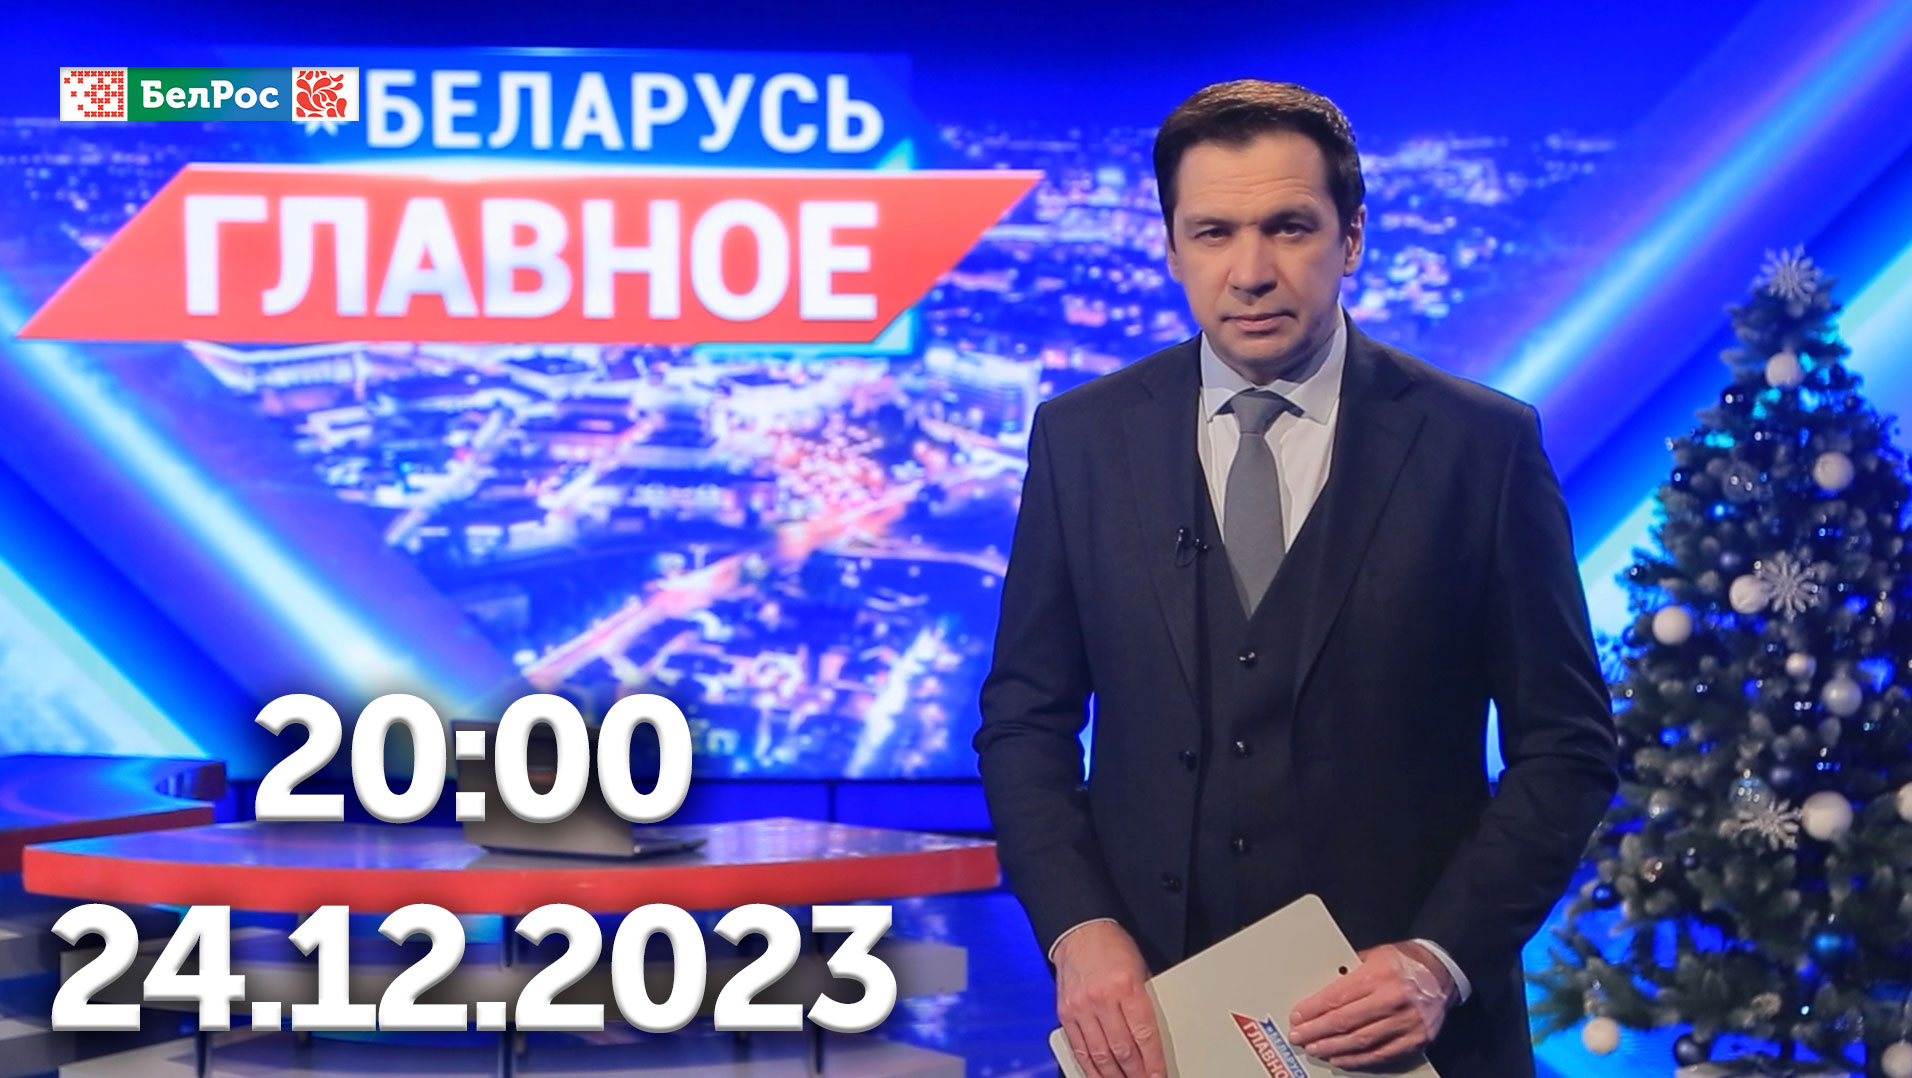 Беларусь. Главное | 24.12.2023